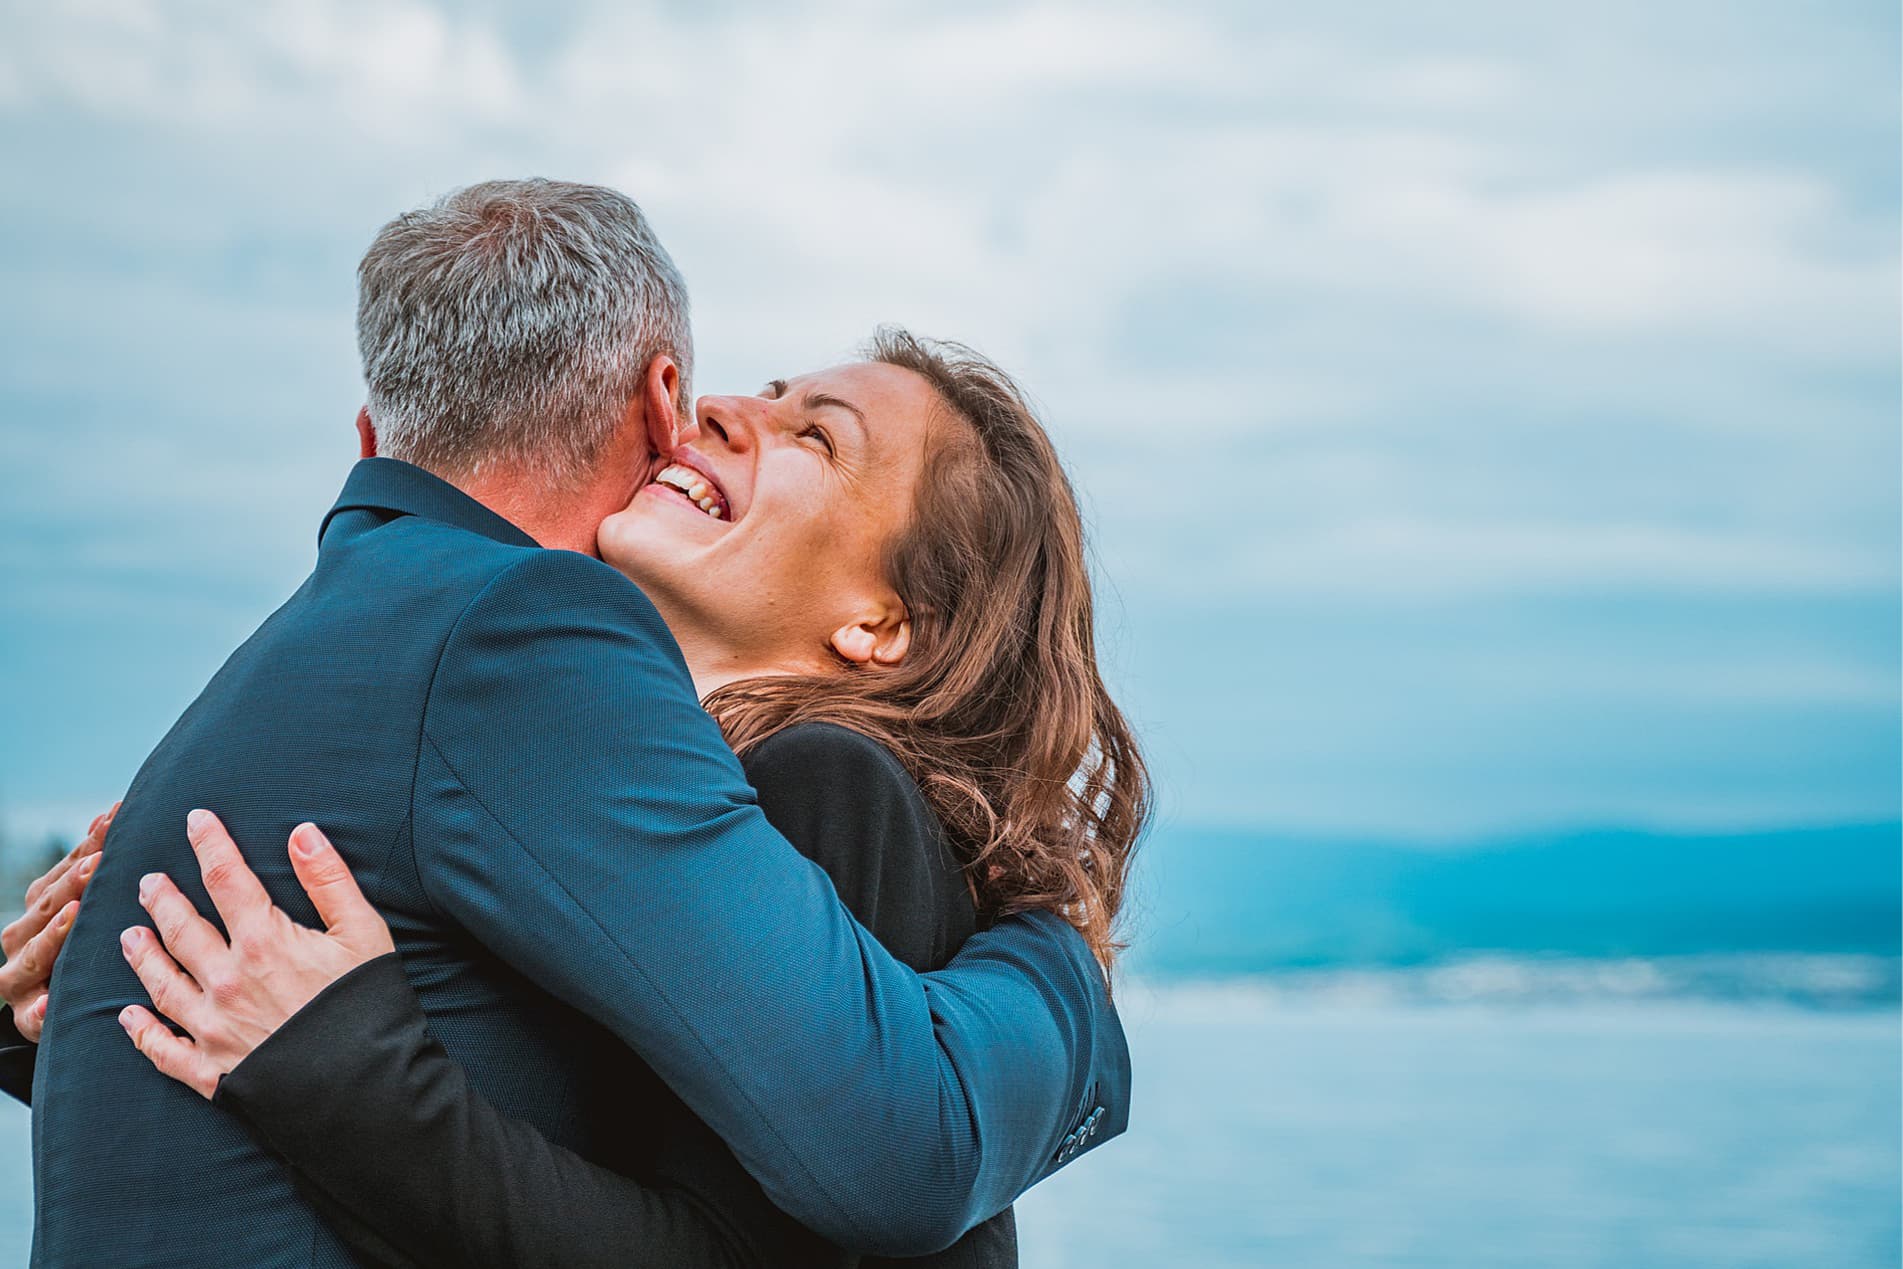 Endlich schuldenfrei umarmt sich ein erleichtertes Ehepaar am Strand mit der See im Hintergrund - Schuldnerberatung Hamburg Bergedorf